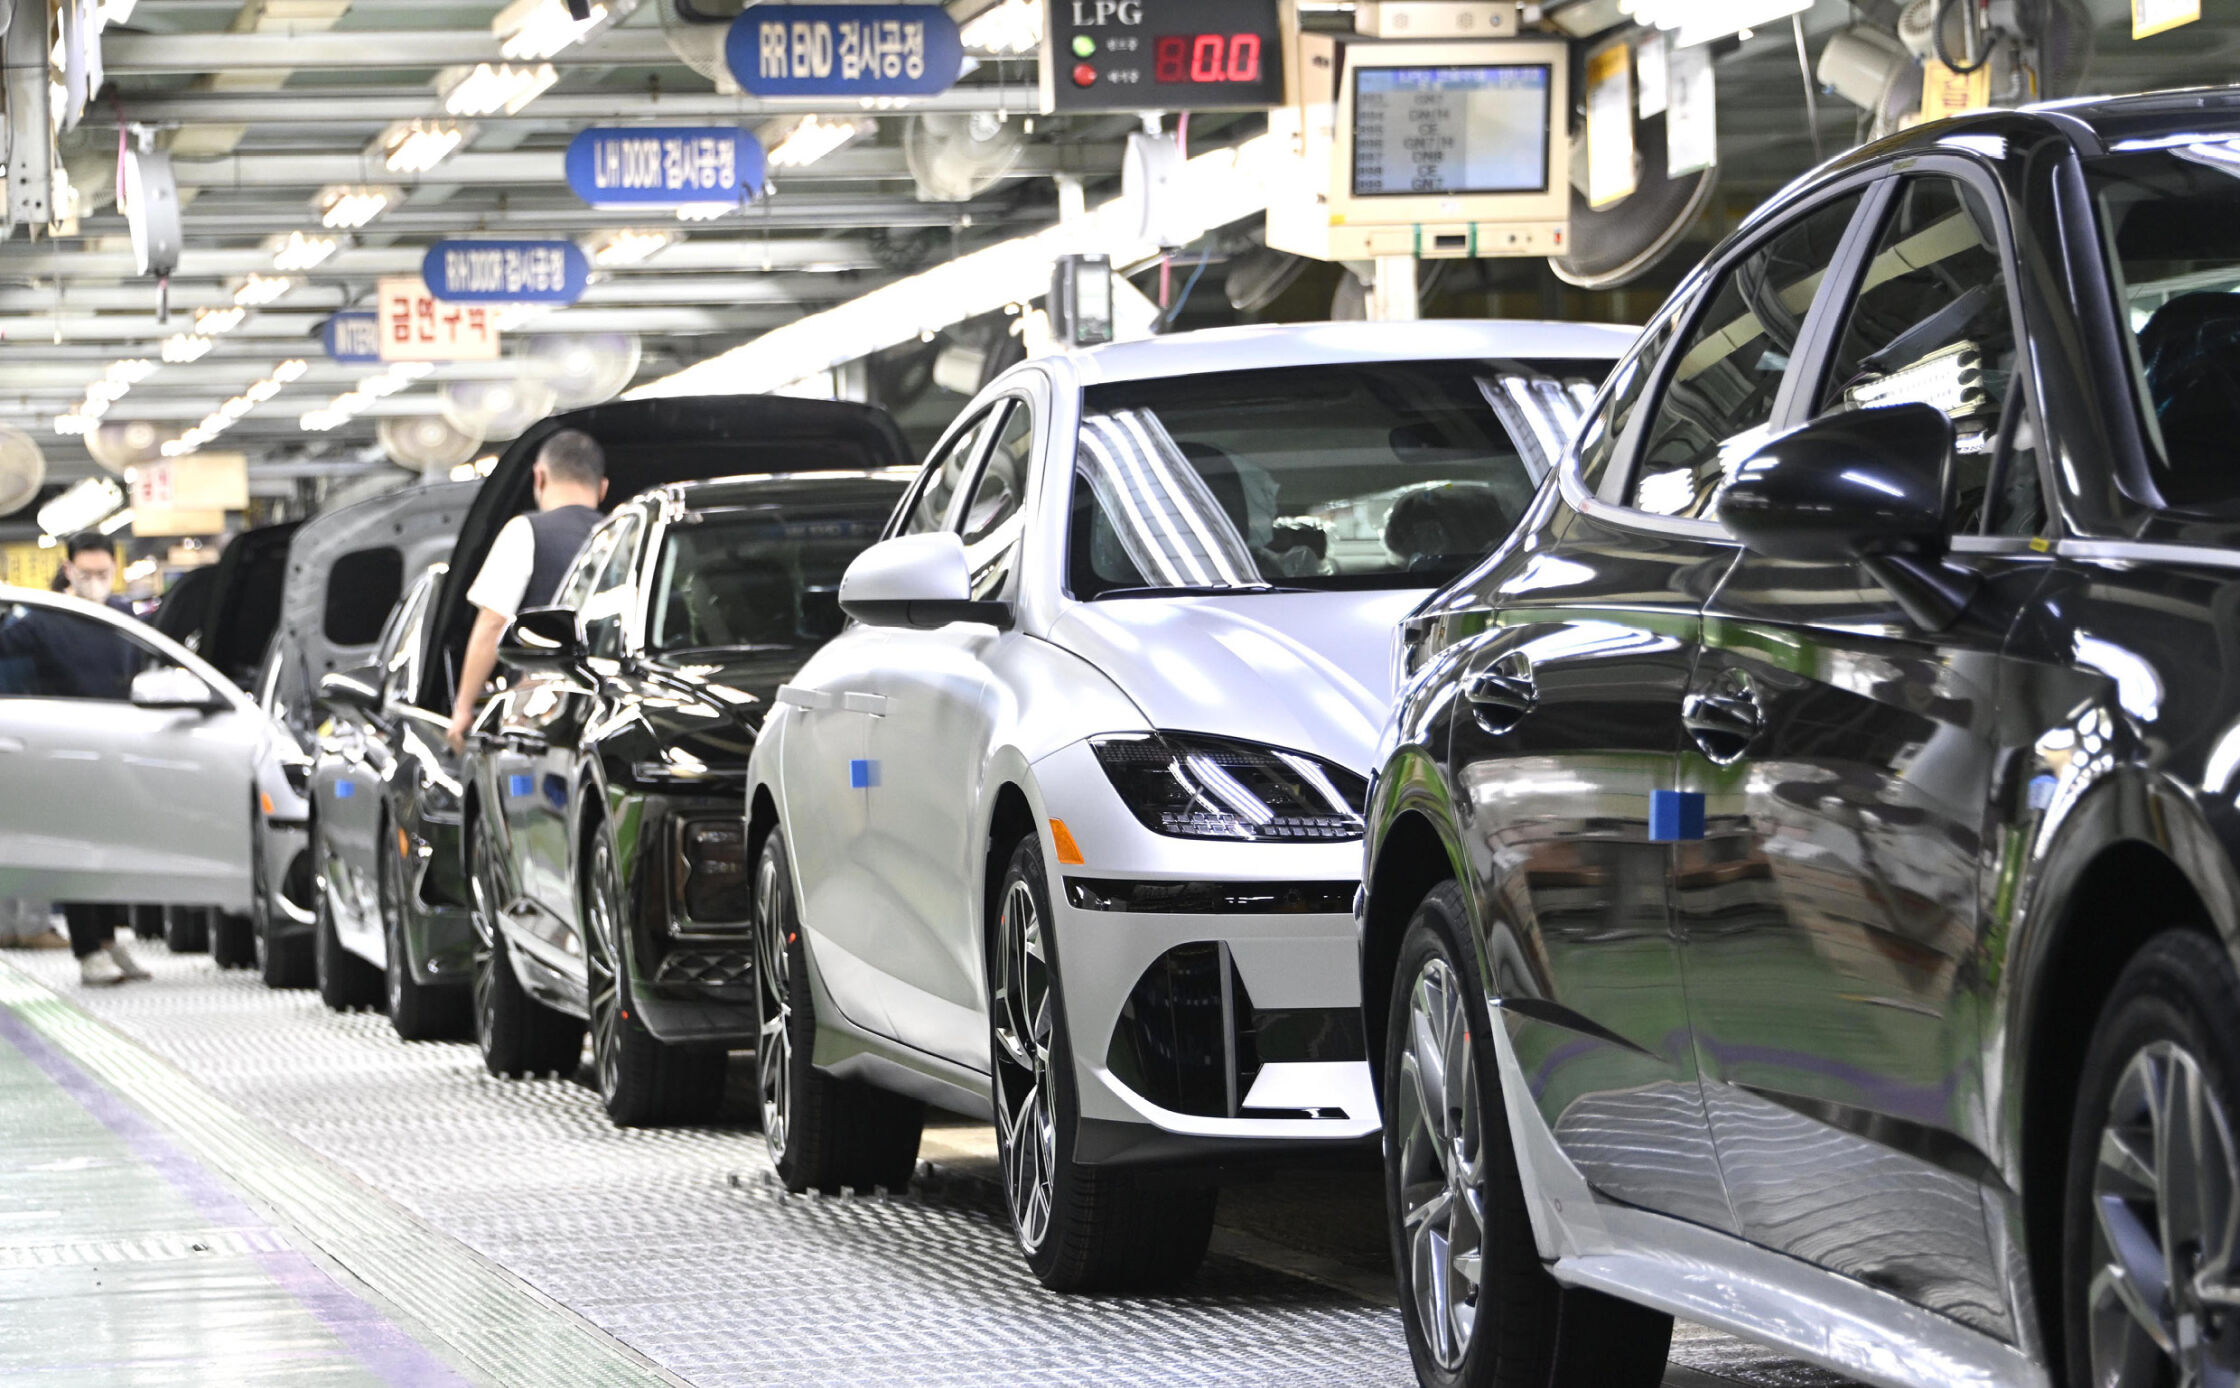 Hyundai 牙山工場でアイオニック6（IONIQ6）が生産されている様子  -  ヒョンデモビリティジャパン ブランドストーリー